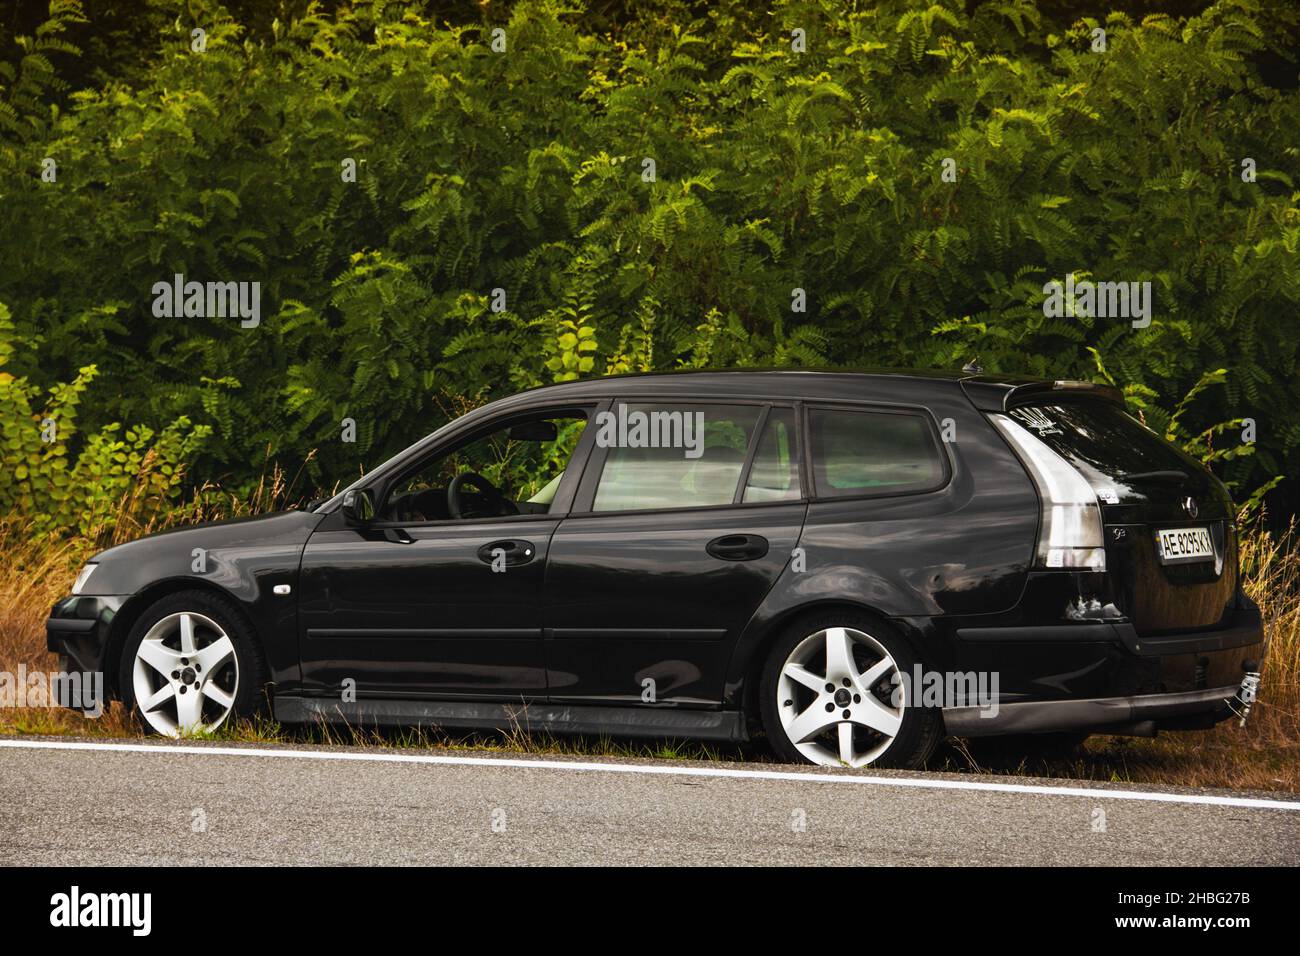 Chernigov, Ukraine - July 24, 2021: Saab car on the road. Black Saab 9-3 Sport Combi on the background of trees Stock Photo